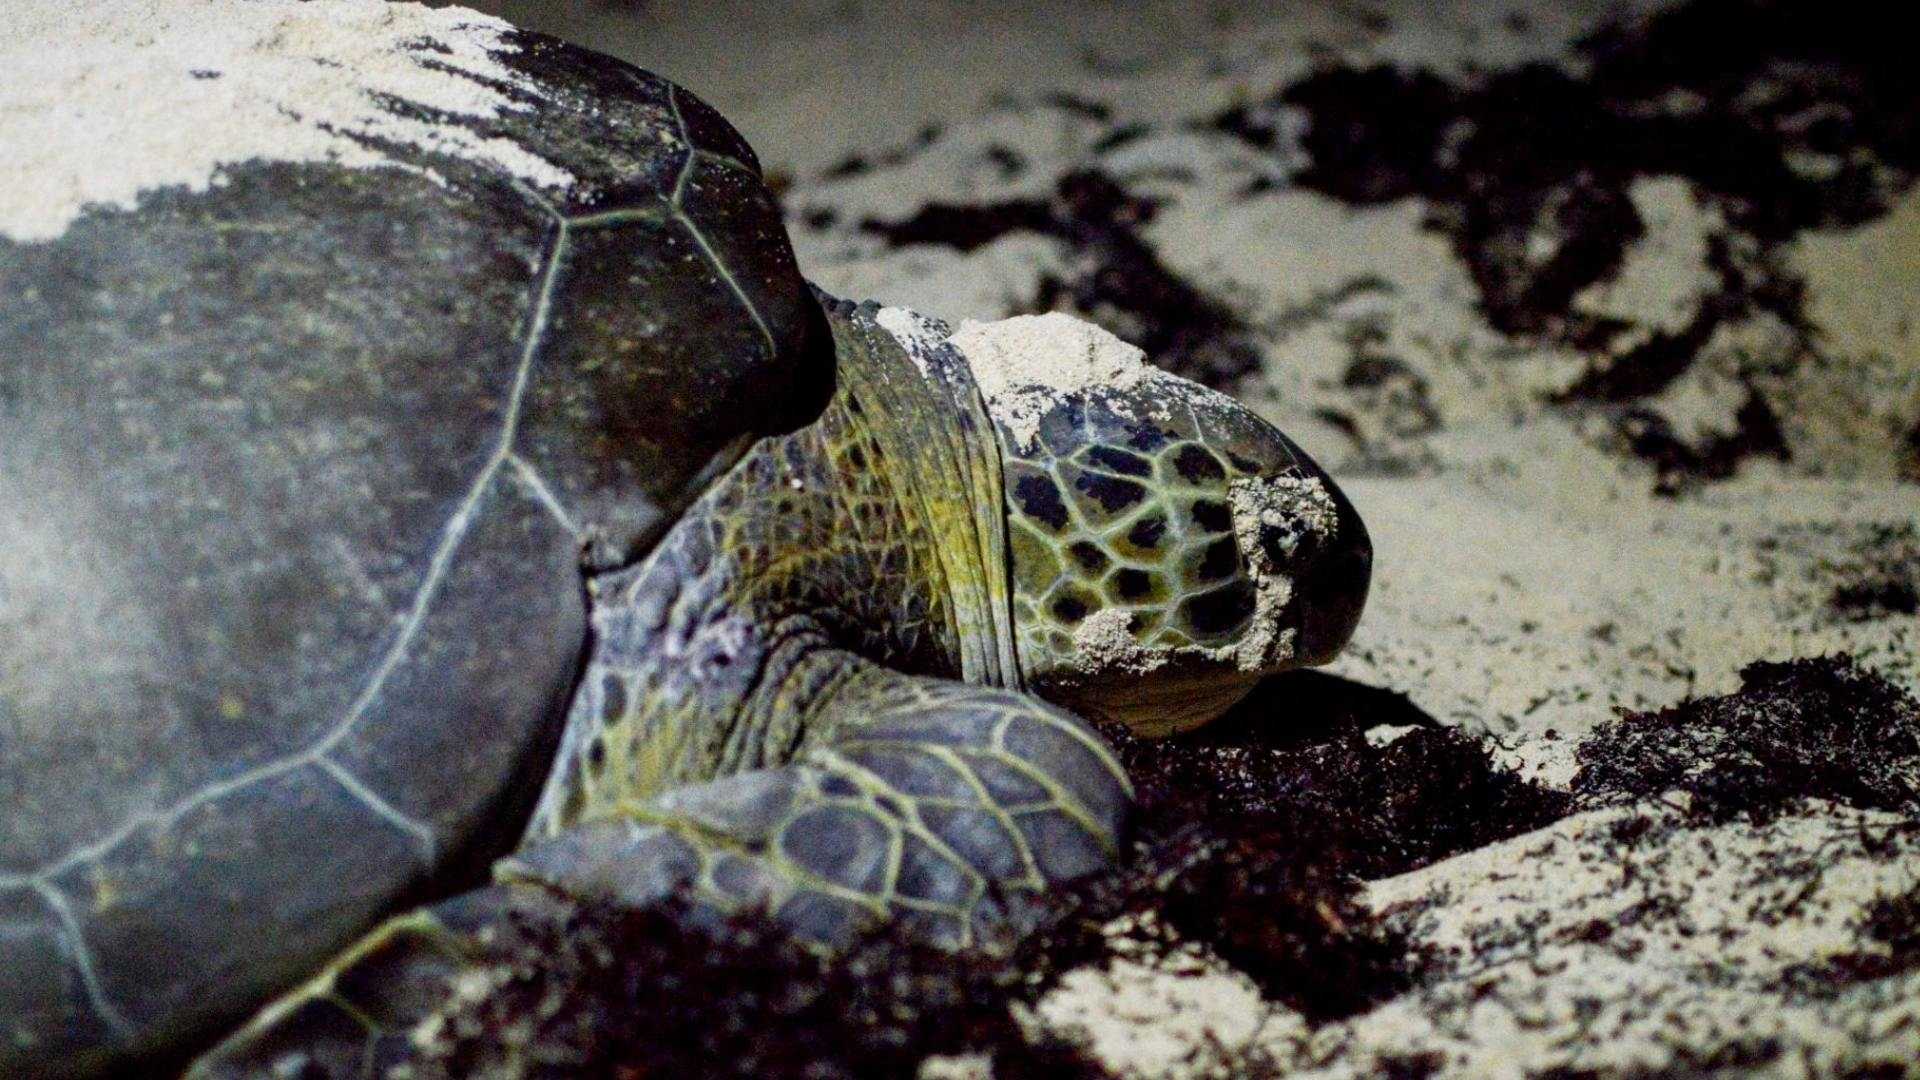 Un nuevo informe detalló que el gobierno de México no ha aplicado de forma efectiva las leyes para proteger a las tortugas caguama